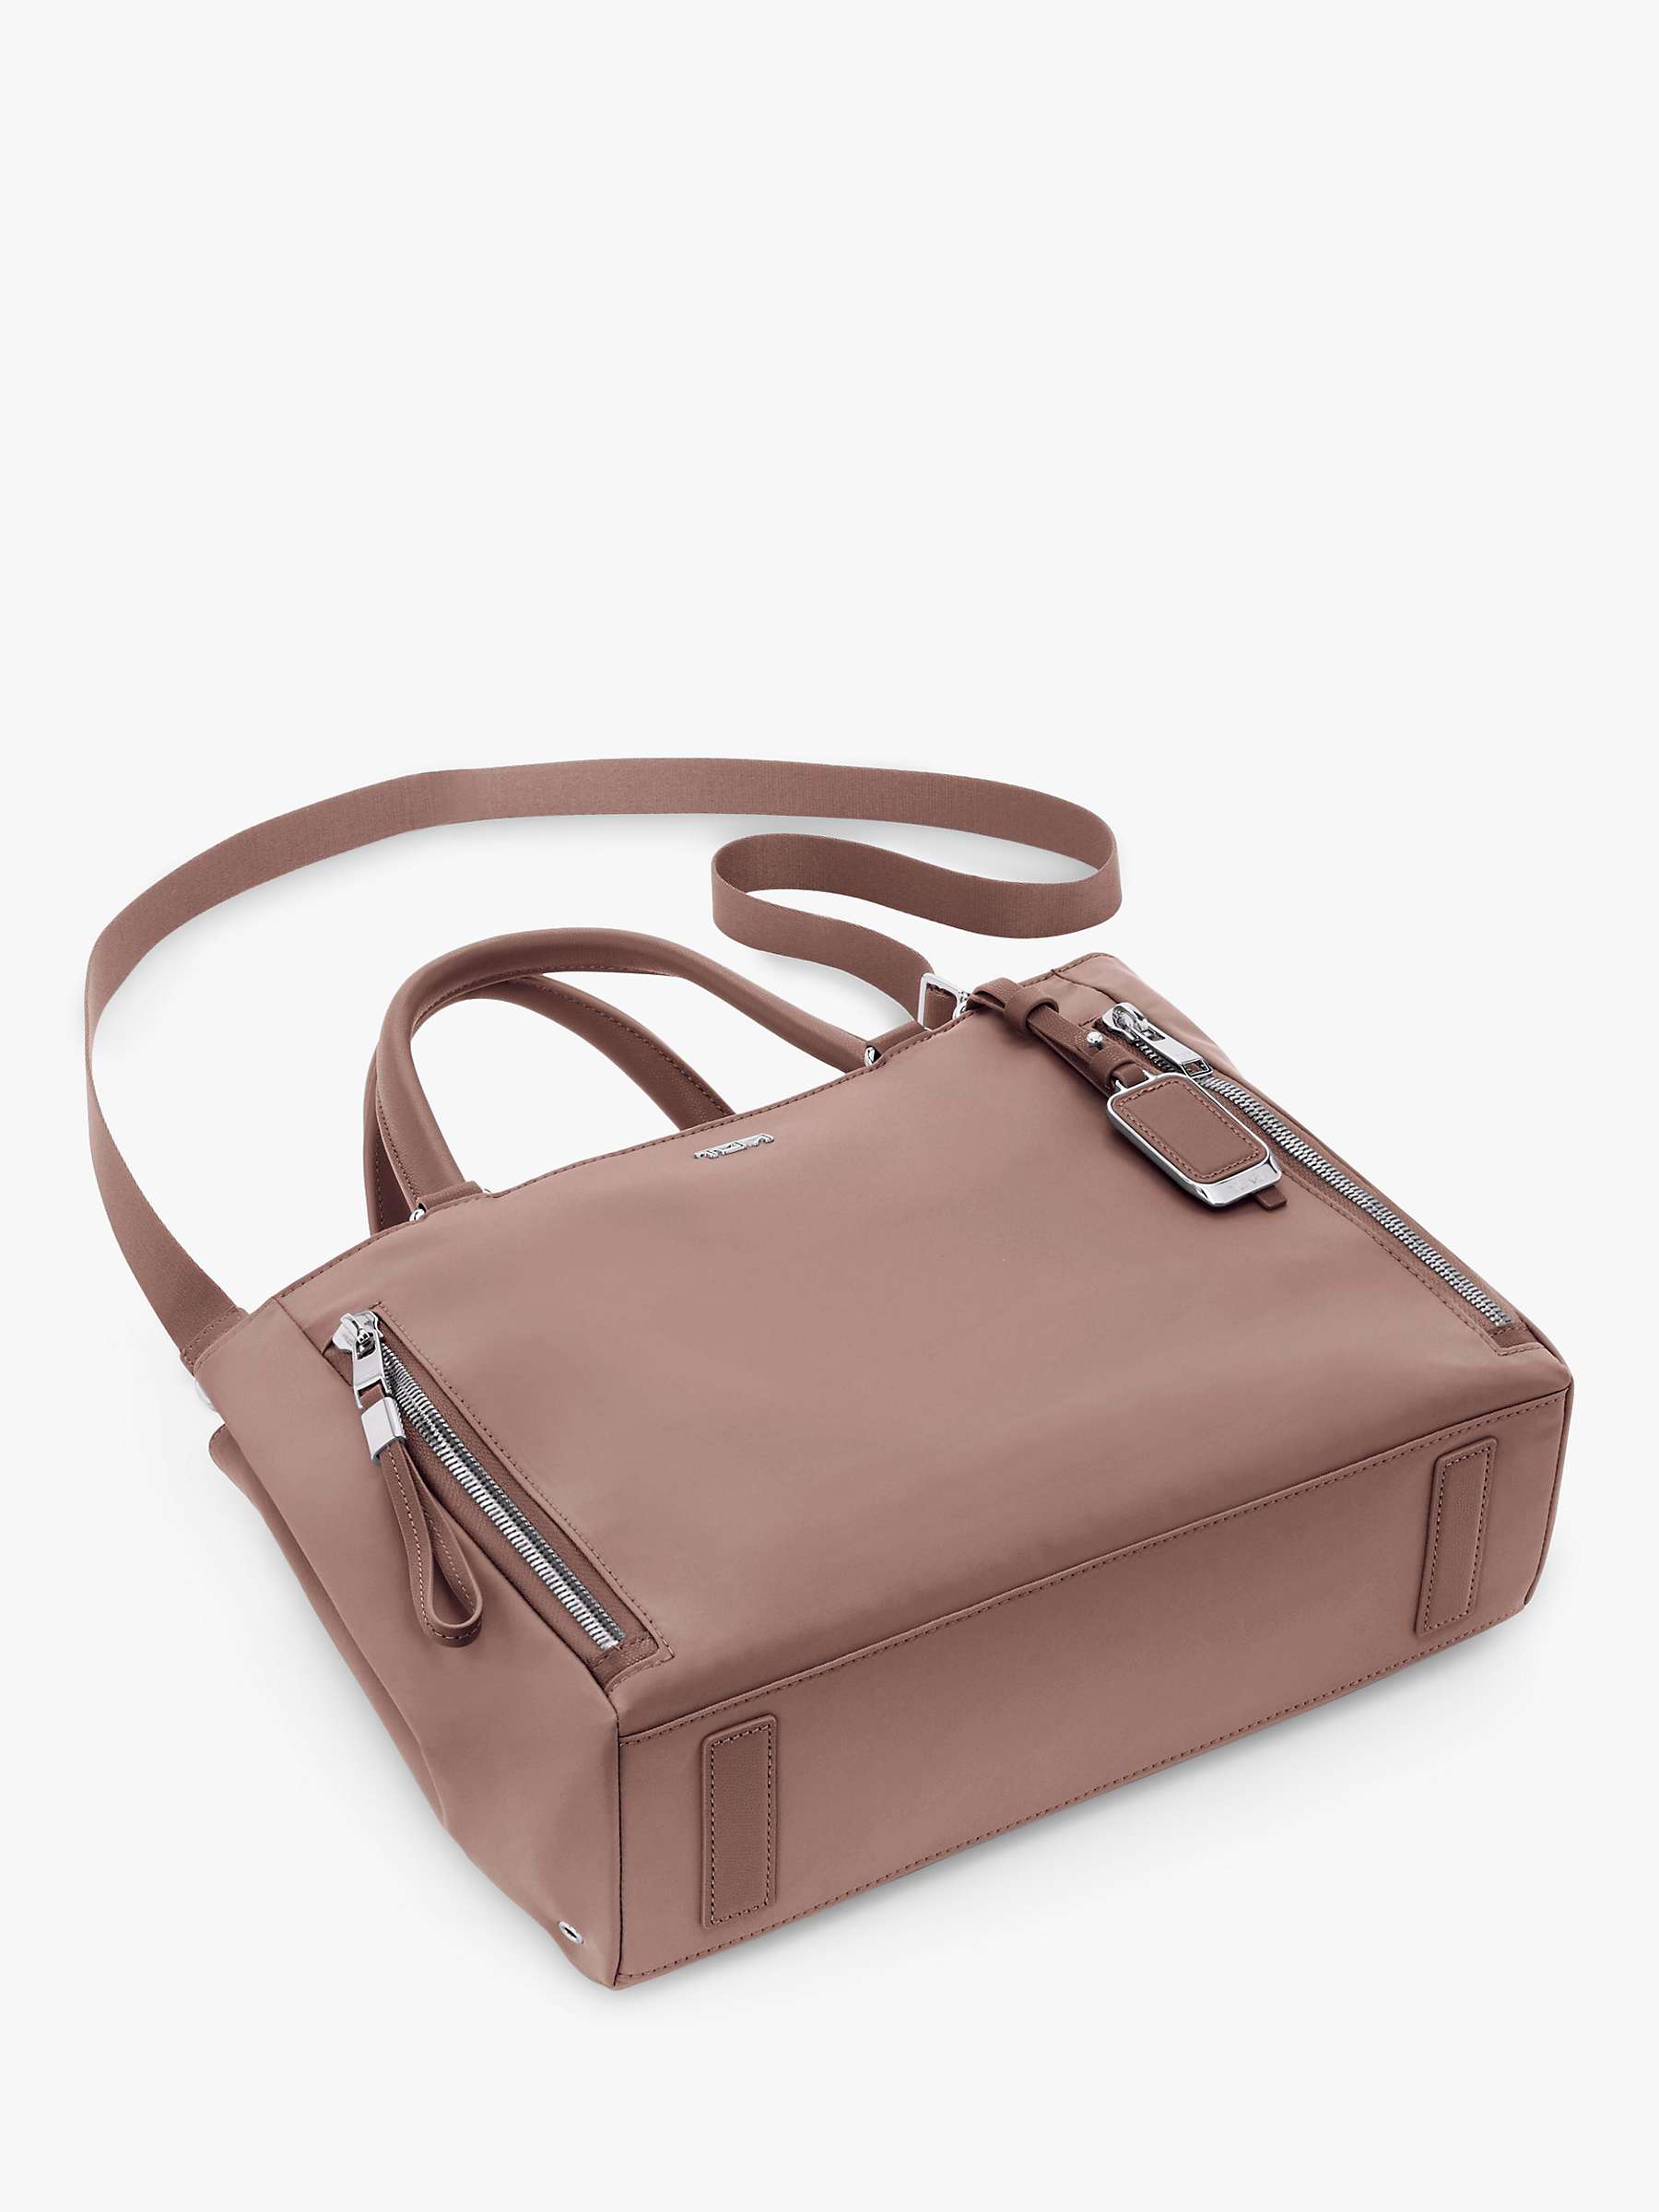 Buy TUMI Valetta Medium Tote Bag, Light Mauve Online at johnlewis.com